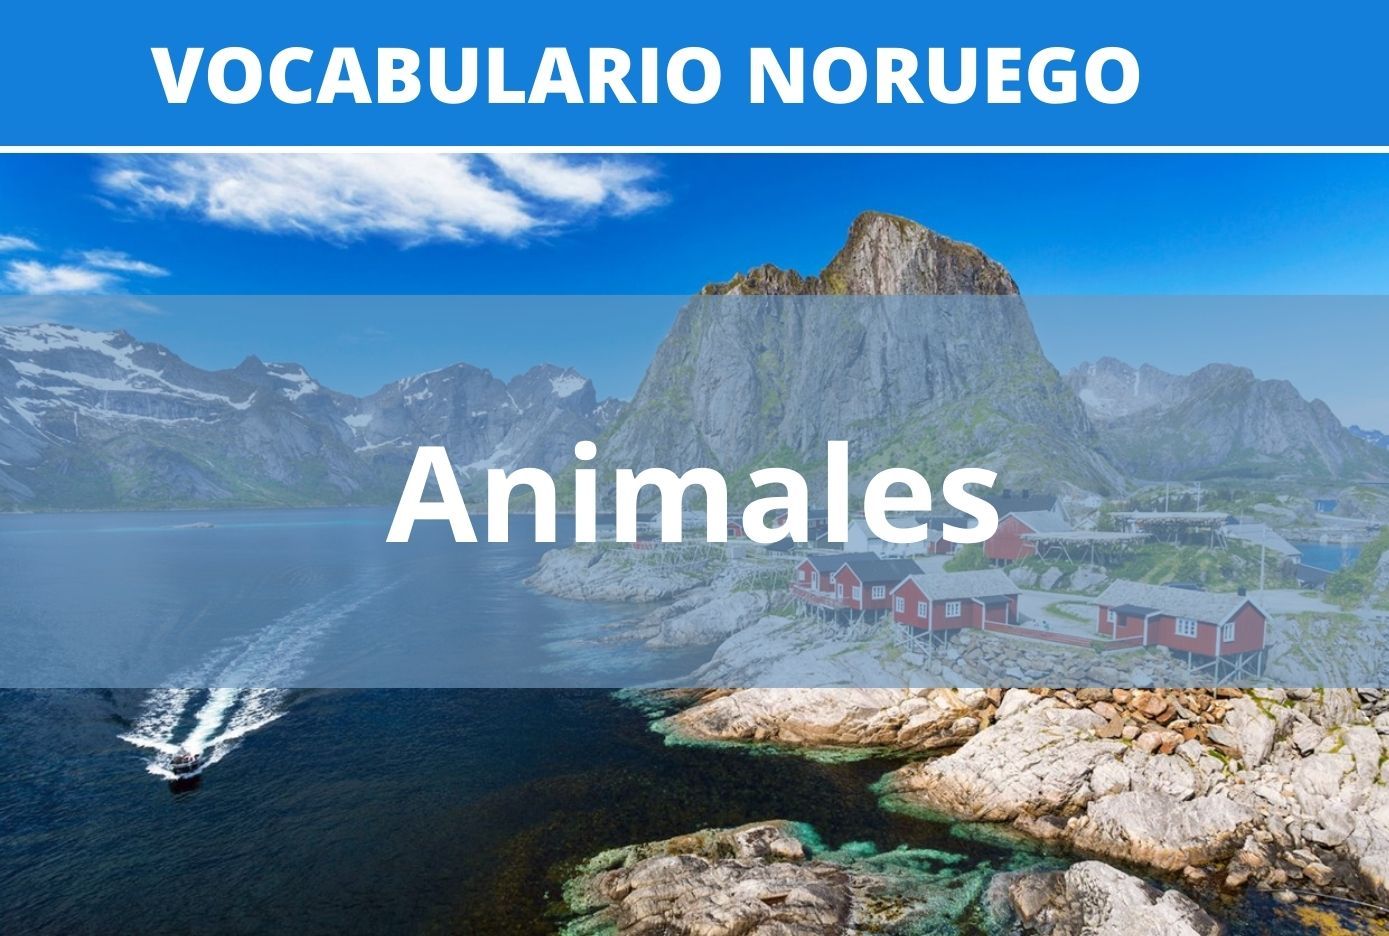 animales en noruego vocabulario